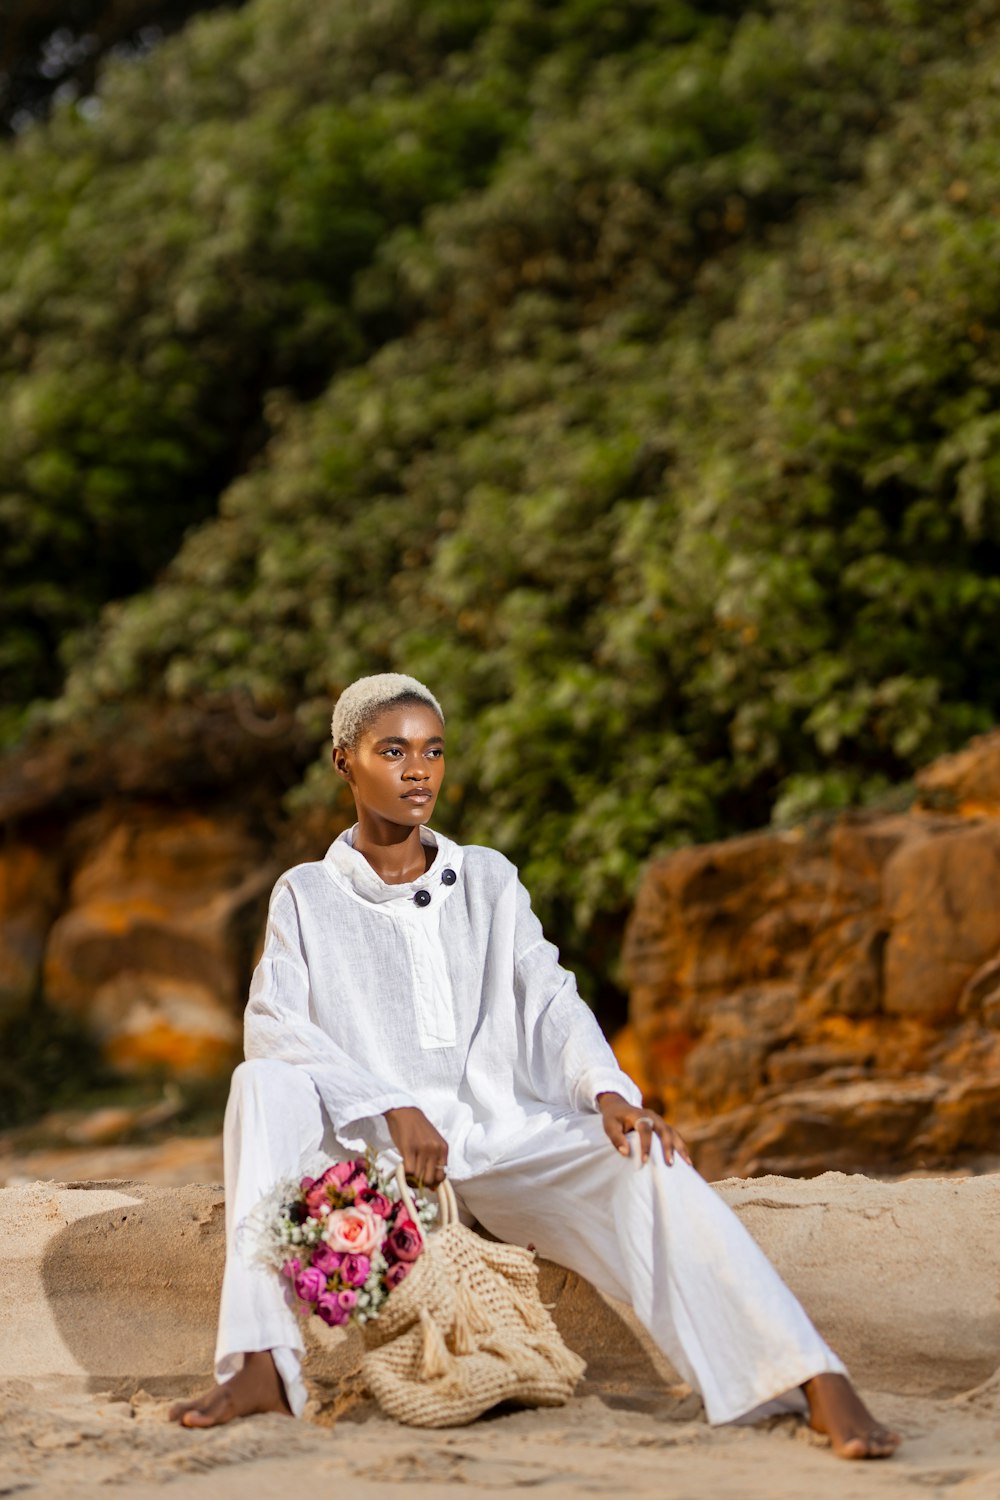 eine Frau, die mit einem Blumenkorb am Strand sitzt